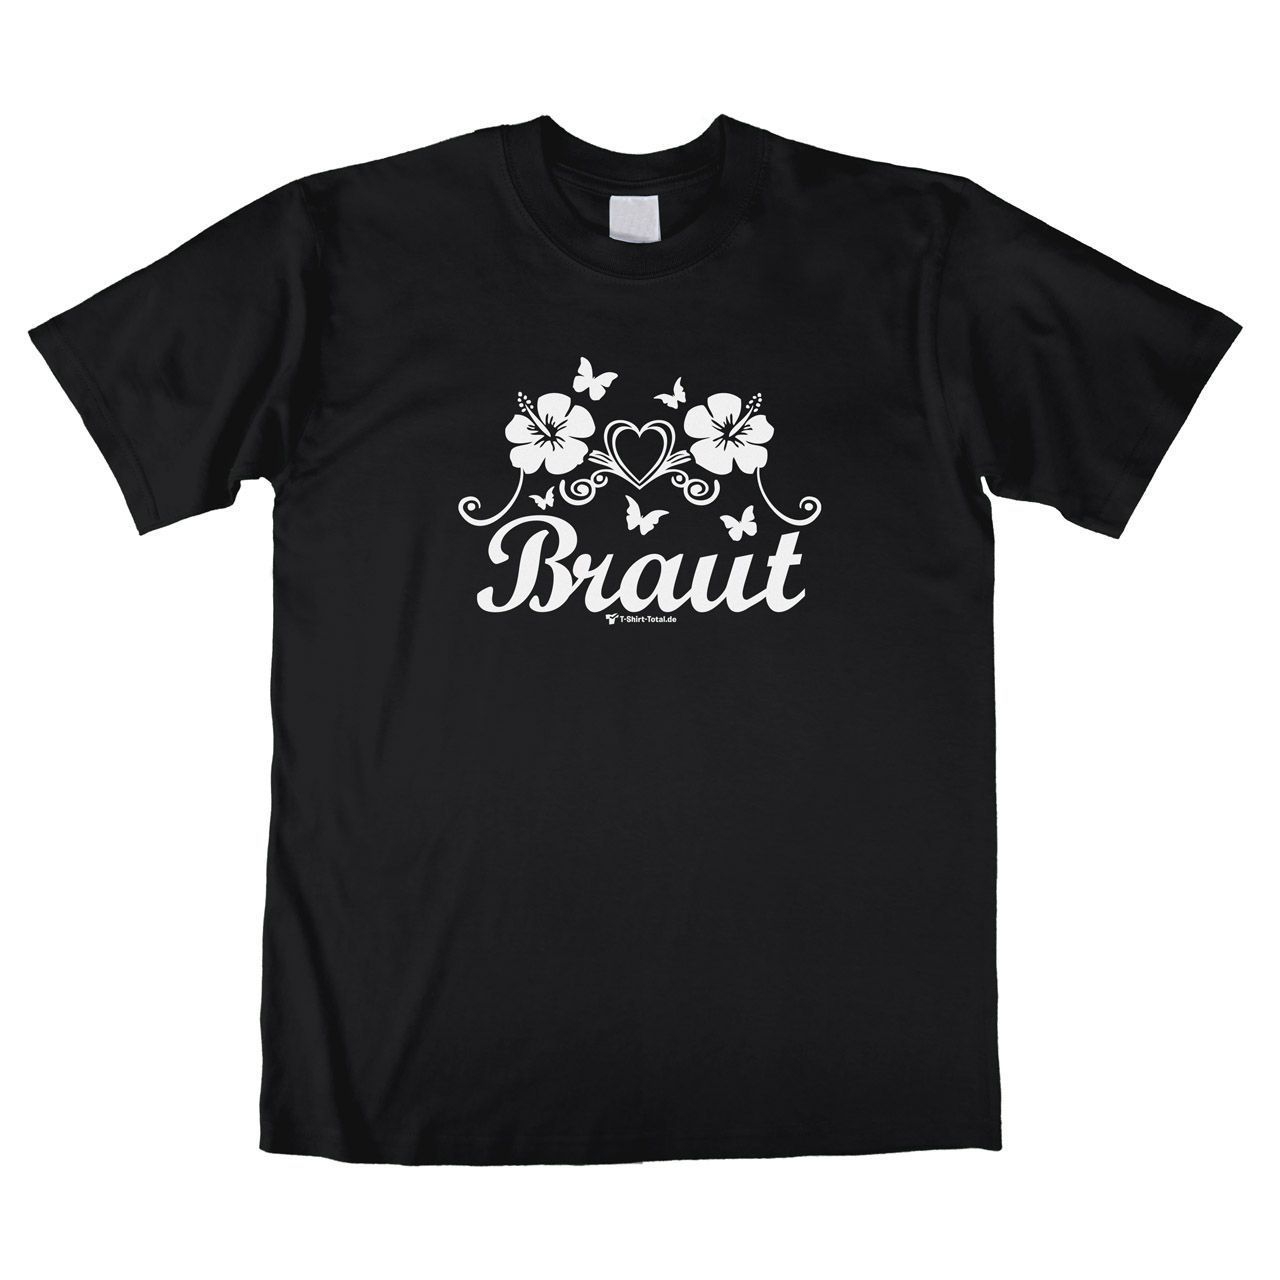 Die Braut Unisex T-Shirt schwarz Small